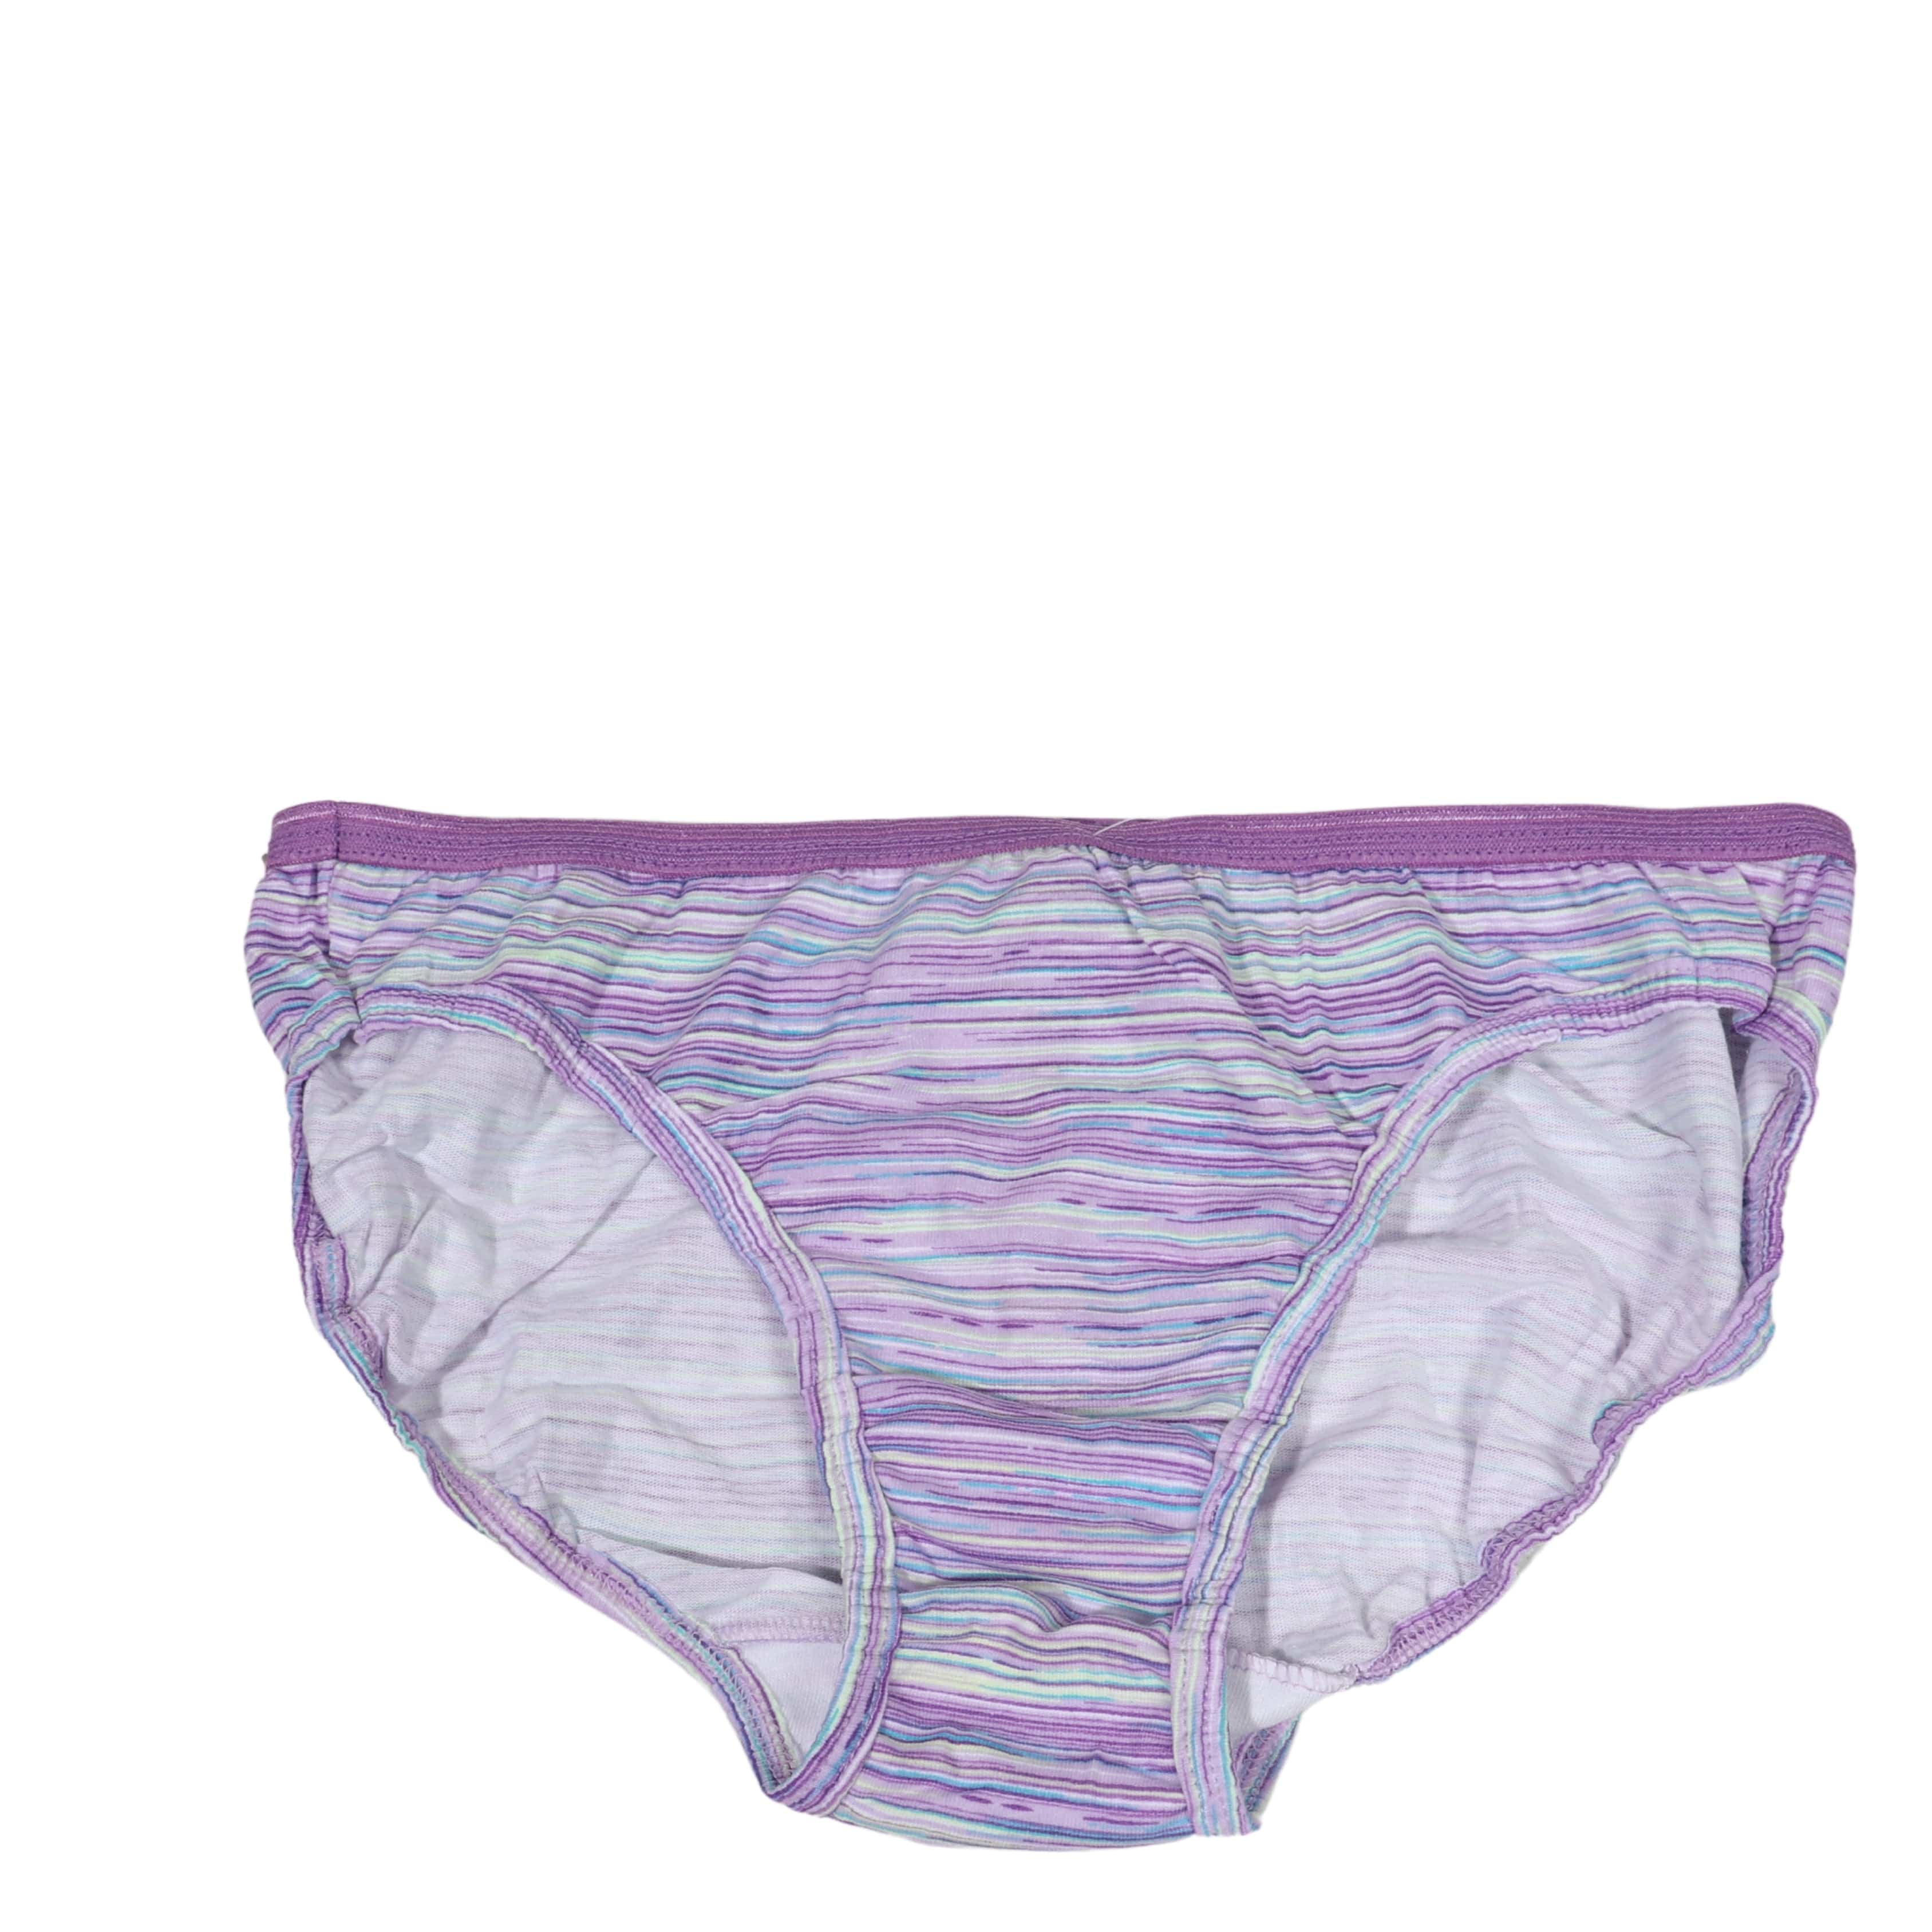 http://brandsandbeyond.me/cdn/shop/products/hanes-girls-underwear-hanes-printed-panties-31039748538403.jpg?v=1670335869